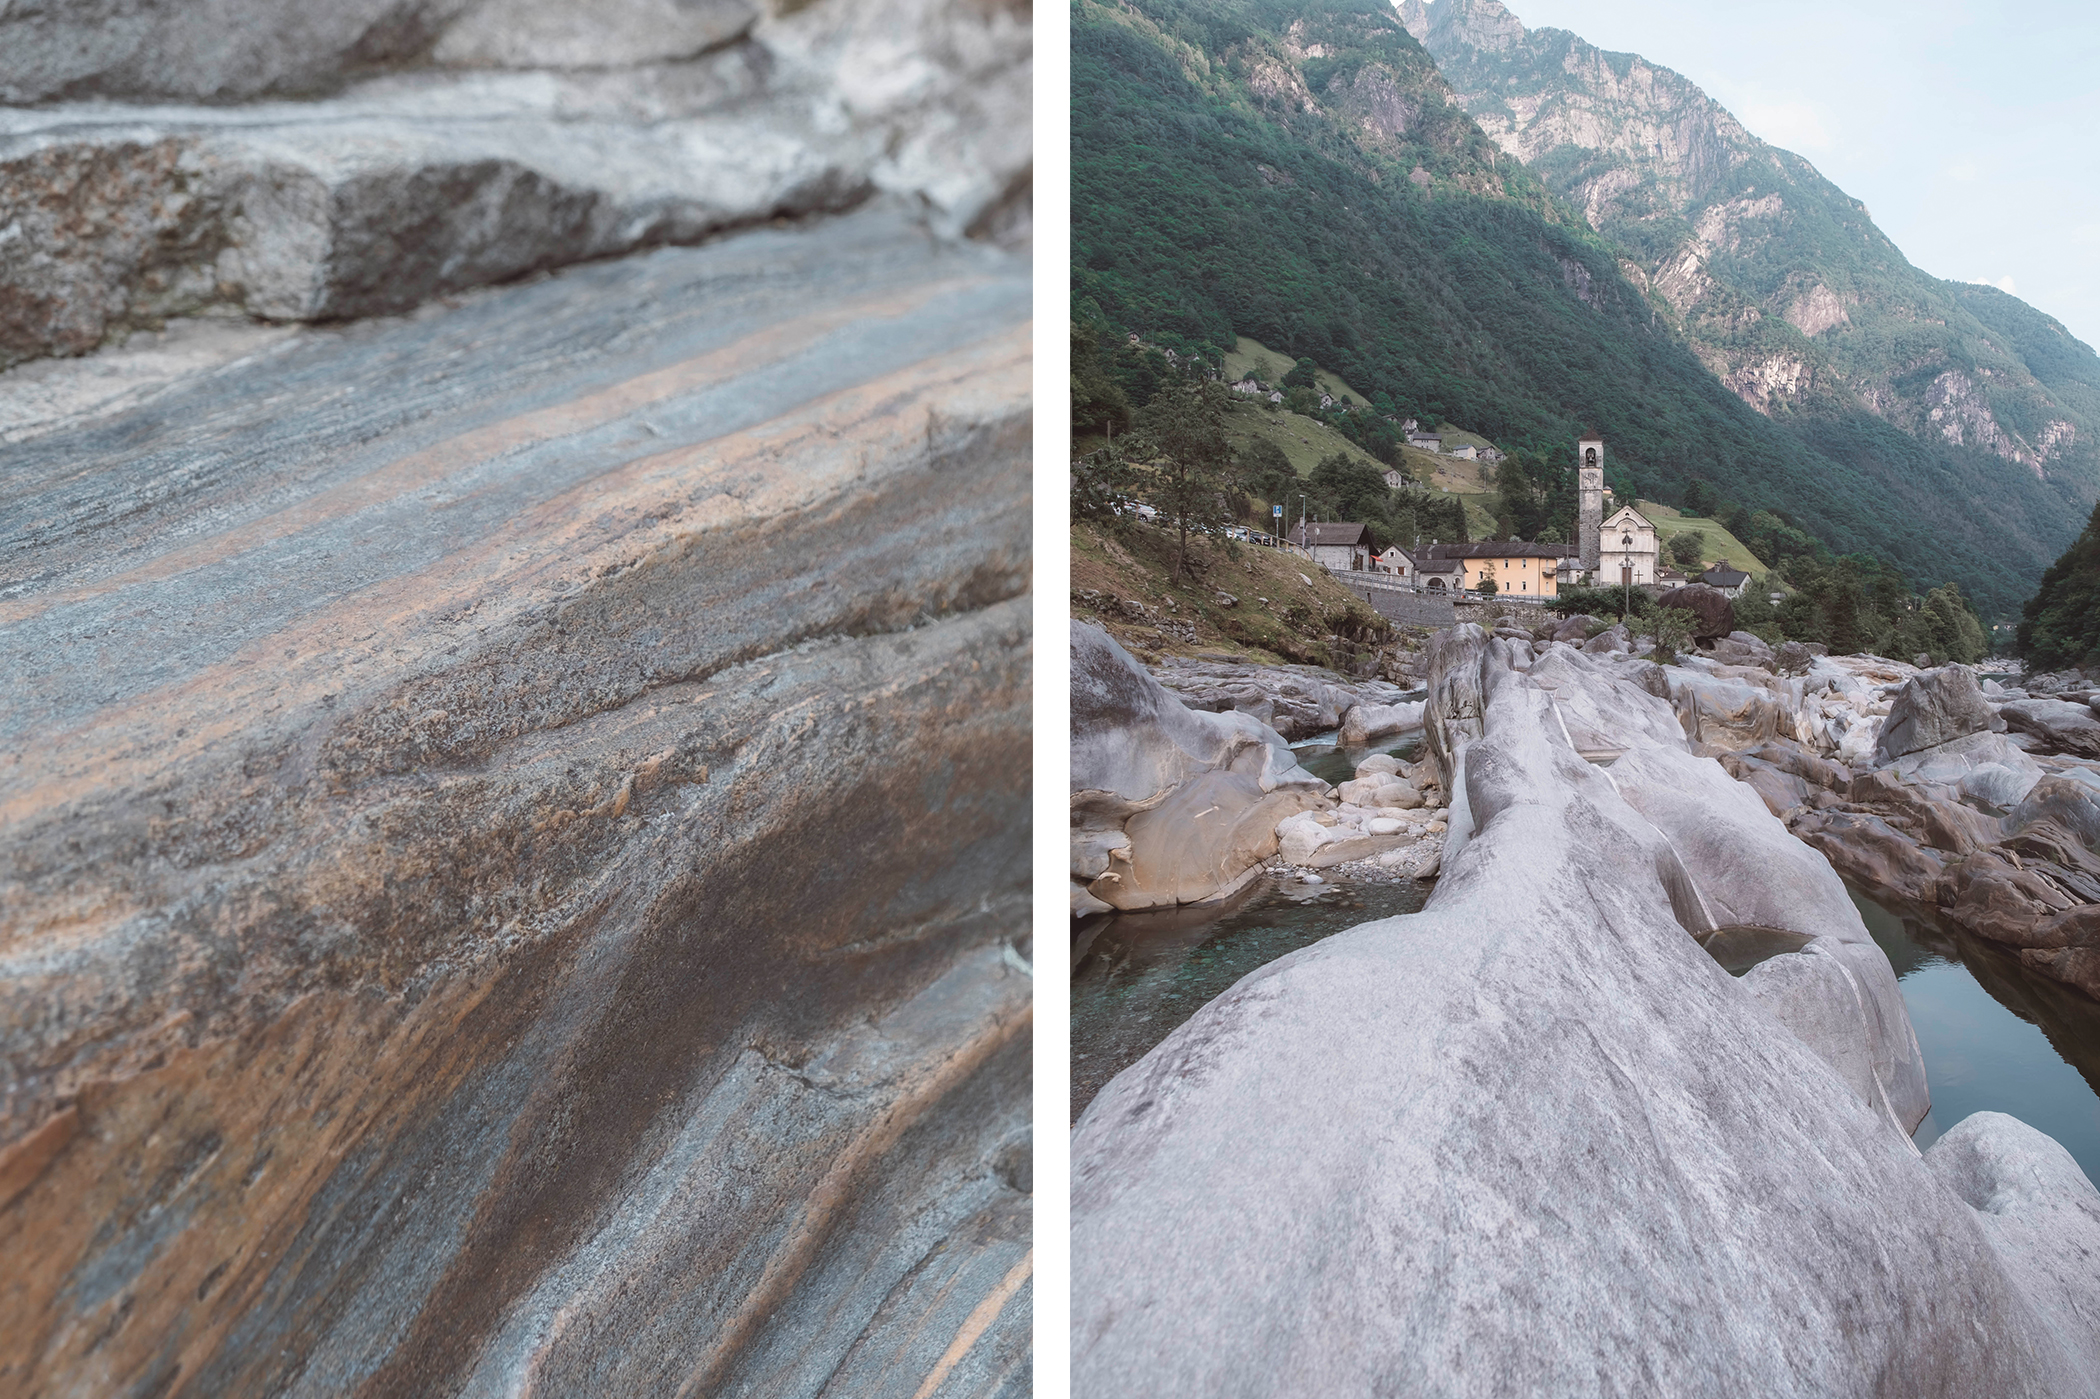 La roche atypique du Val Verzasca, lissée par le passage des eaux et du temps